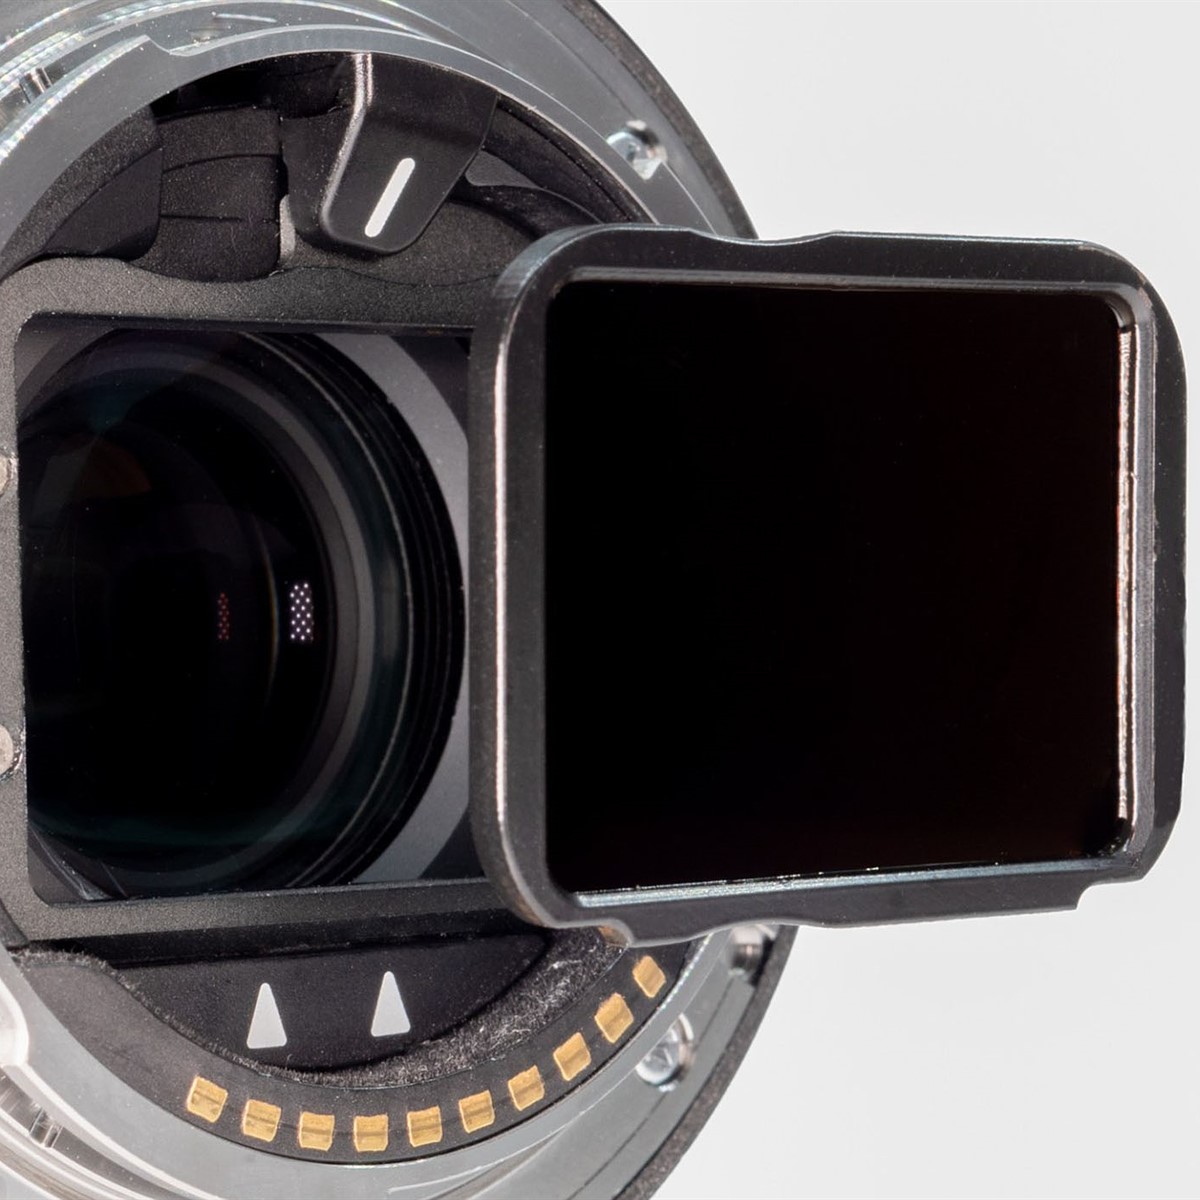 Aurora Aperture giới thiệu hệ thống filter sau dành cho Canon, Nikon, Sigma và ống kính góc siêu rộng Sony